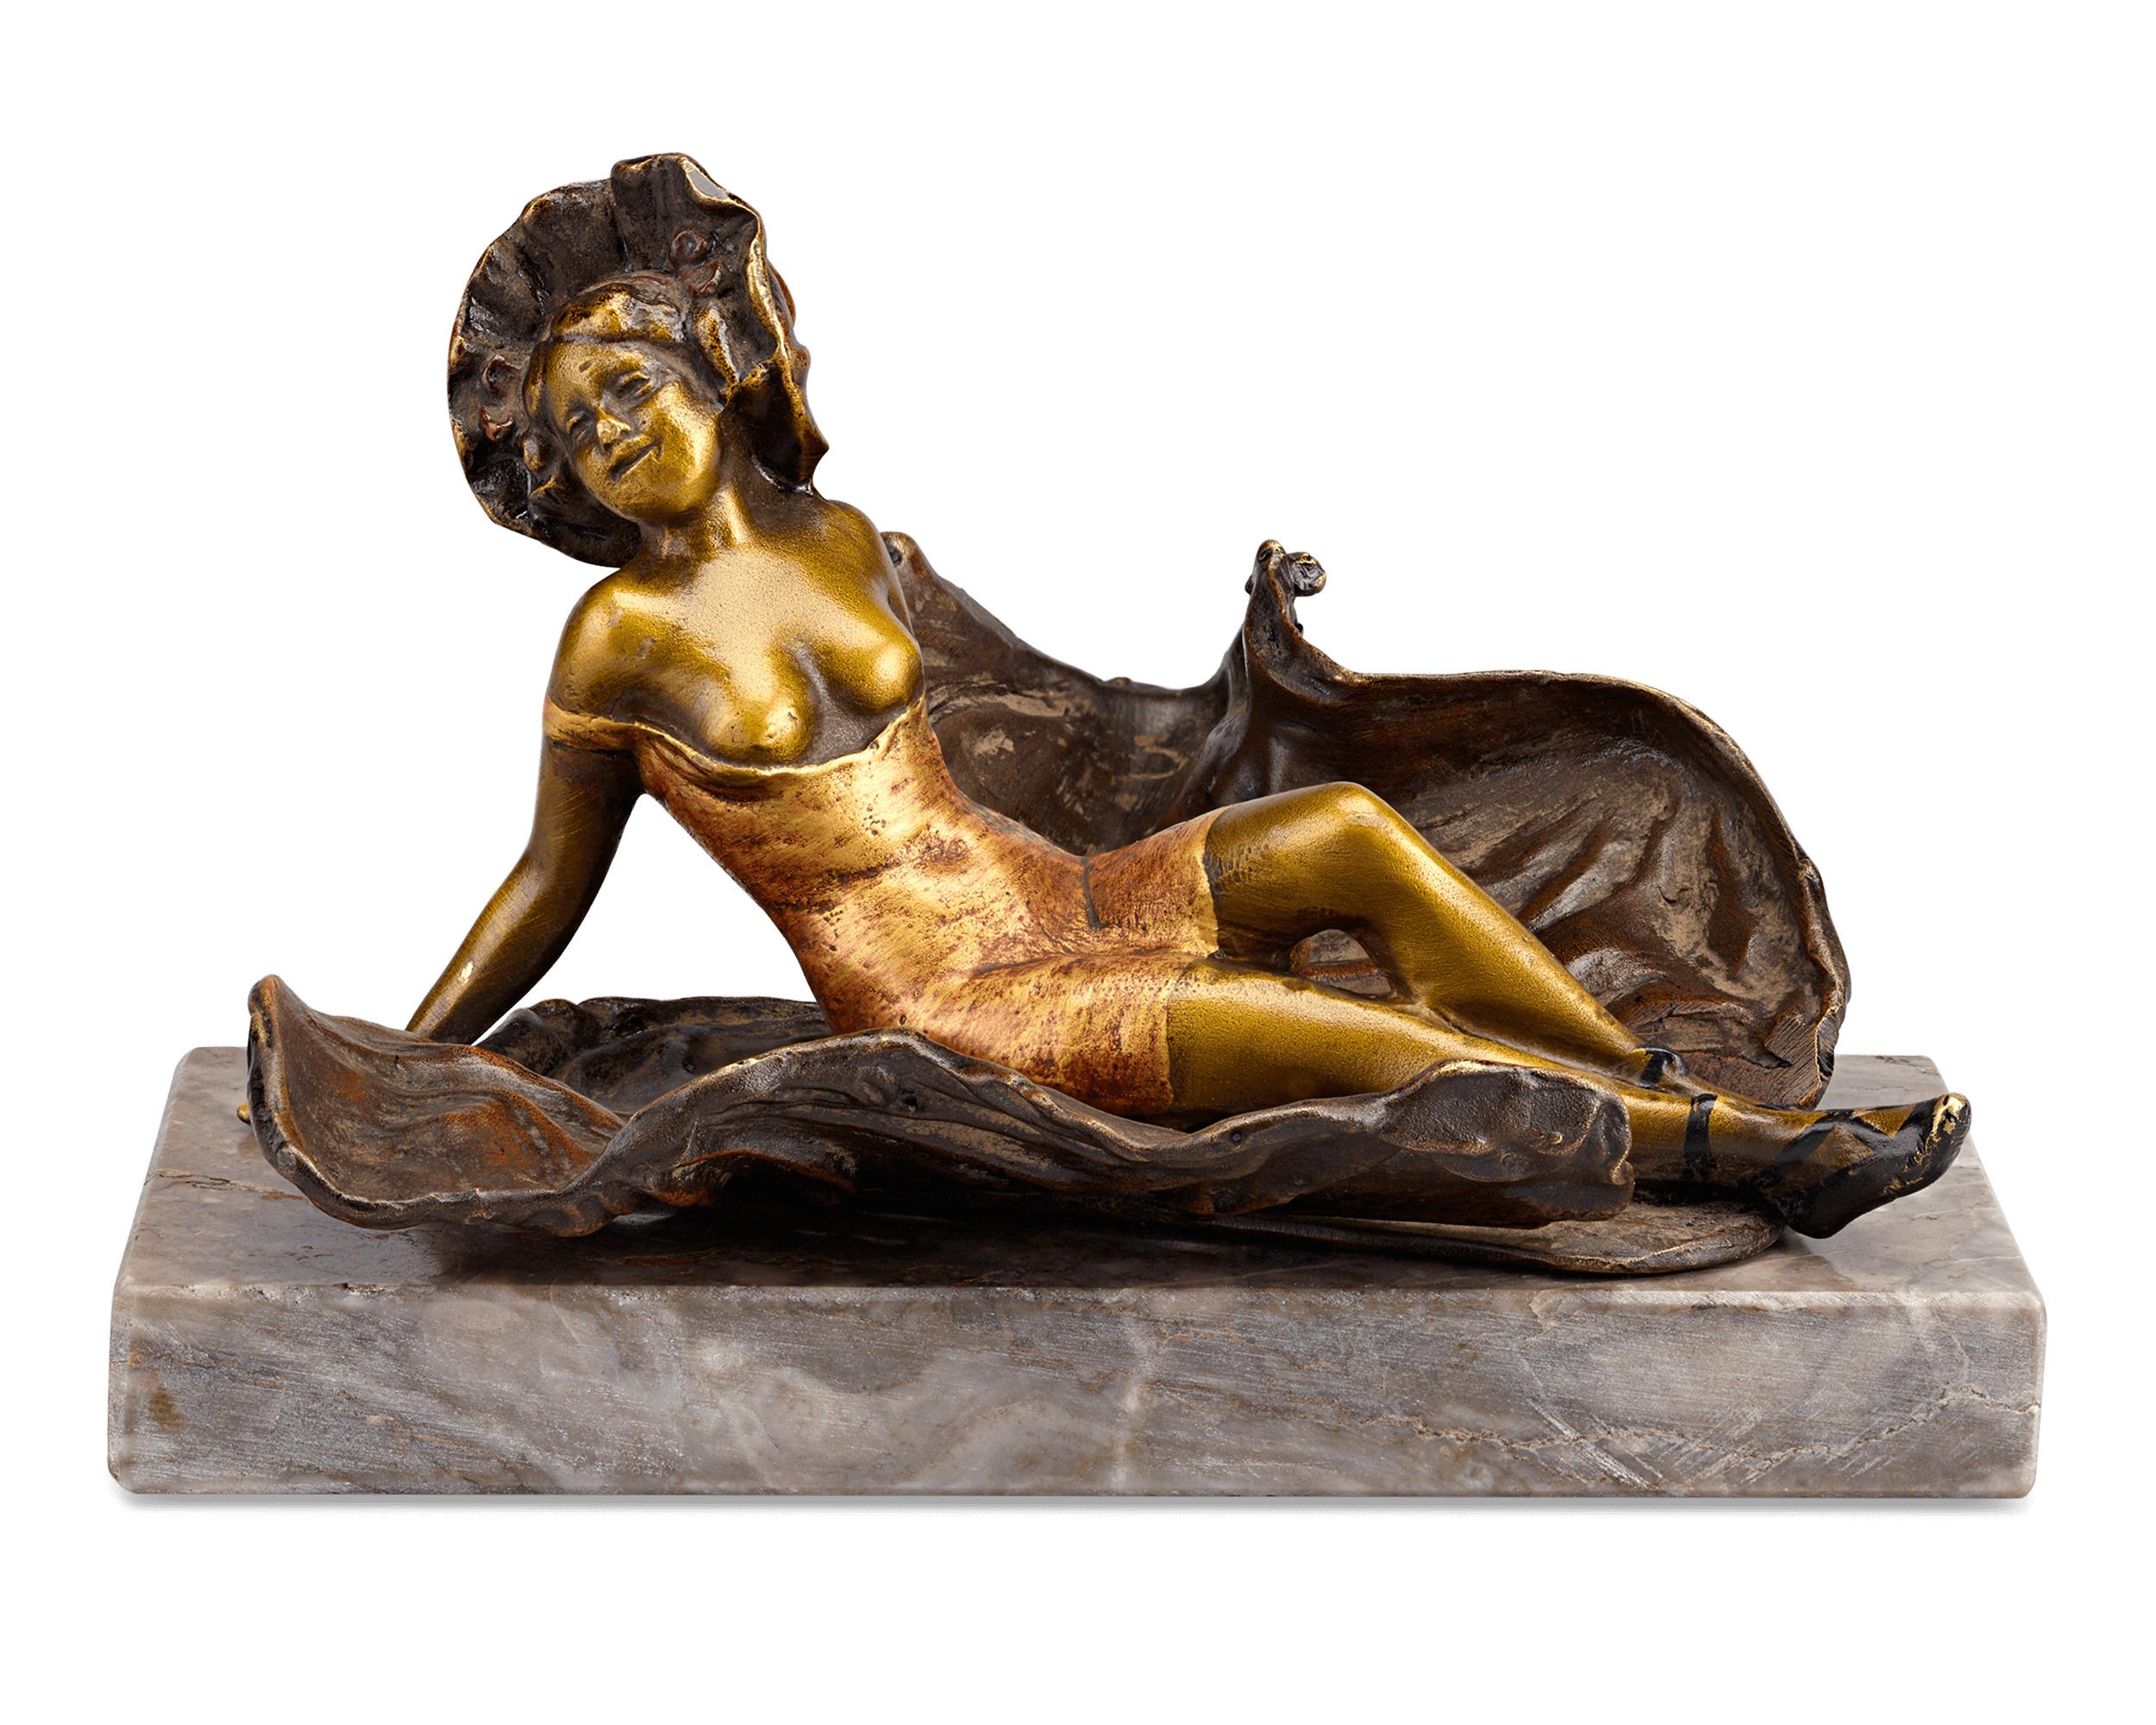 Hinter dieser bezaubernden Belle-Époque-Figur verbirgt sich mehr, als man auf den ersten Blick sieht. Die aus Bronze gefertigte und mit Kaltpressemail versehene Figur einer jungen Frau in ihrem Gewand birgt eine verlockende Überraschung. Dank eines